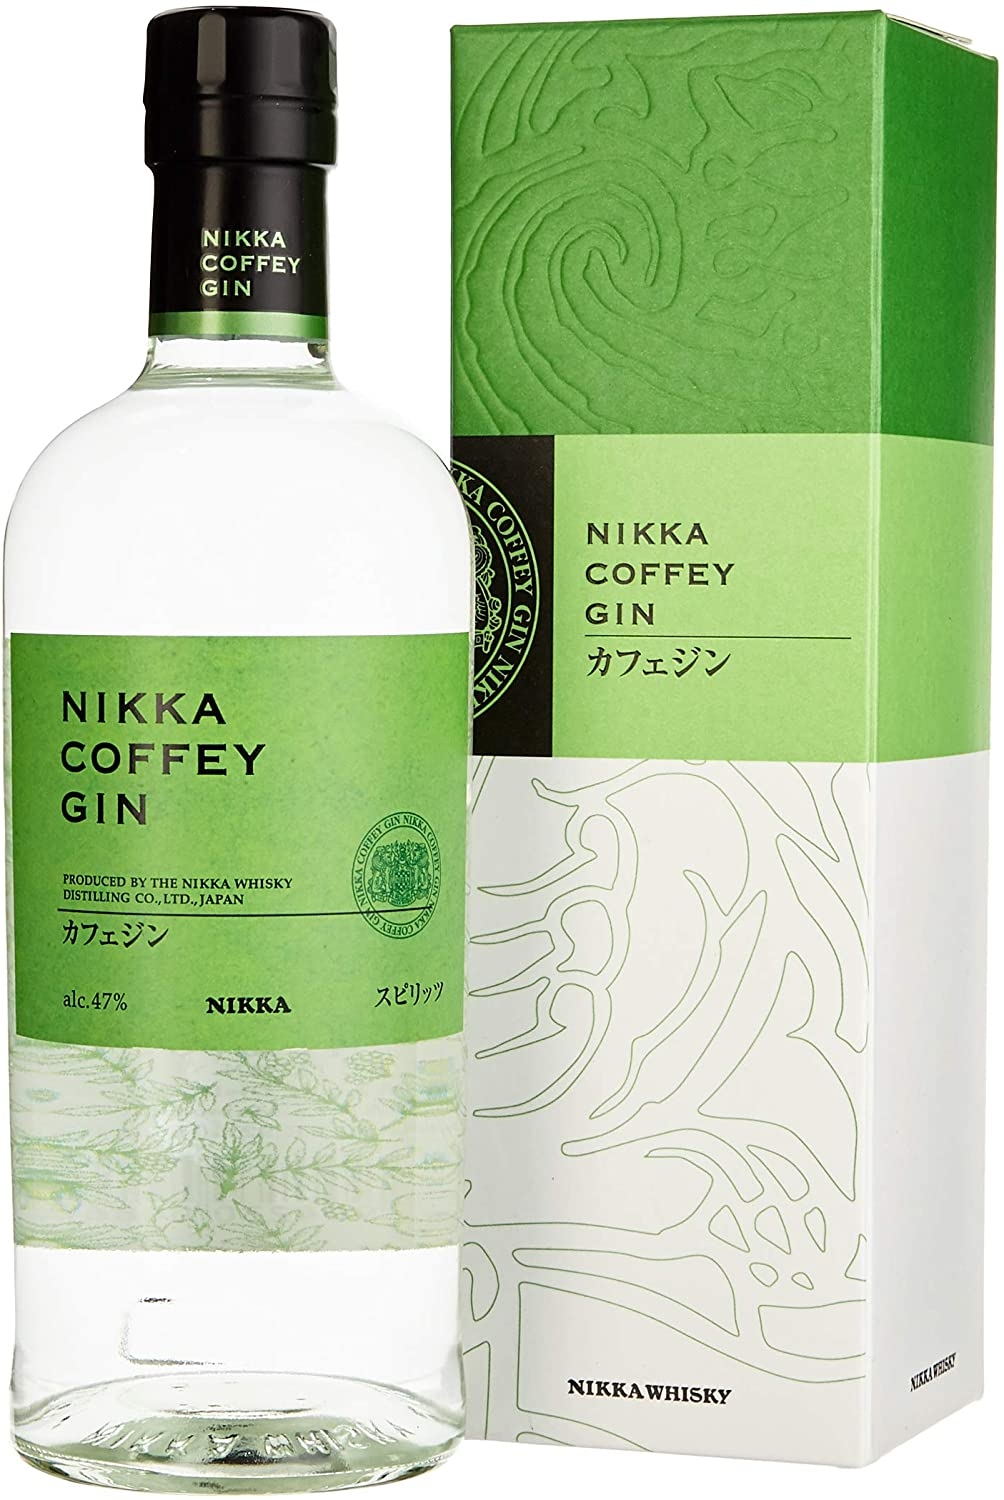 Nikka Coffey Gin japonais